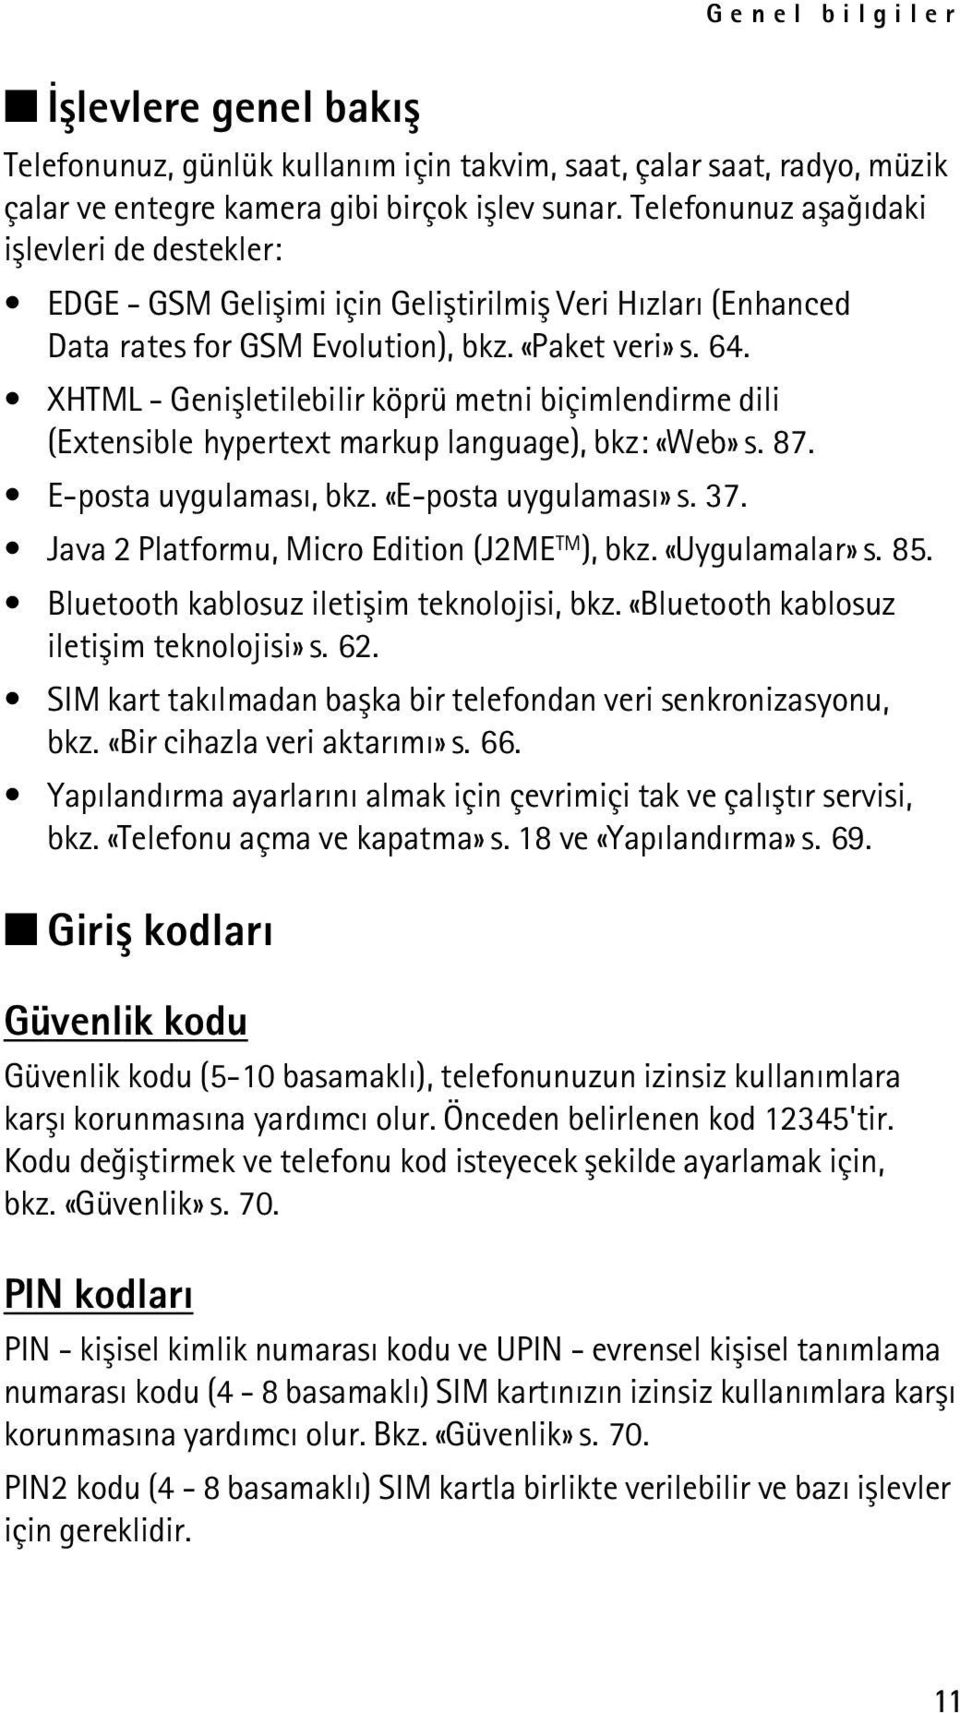 XHTML - Geniþletilebilir köprü metni biçimlendirme dili (Extensible hypertext markup language), bkz: «Web» s. 87. E-posta uygulamasý, bkz. «E-posta uygulamasý» s. 37.